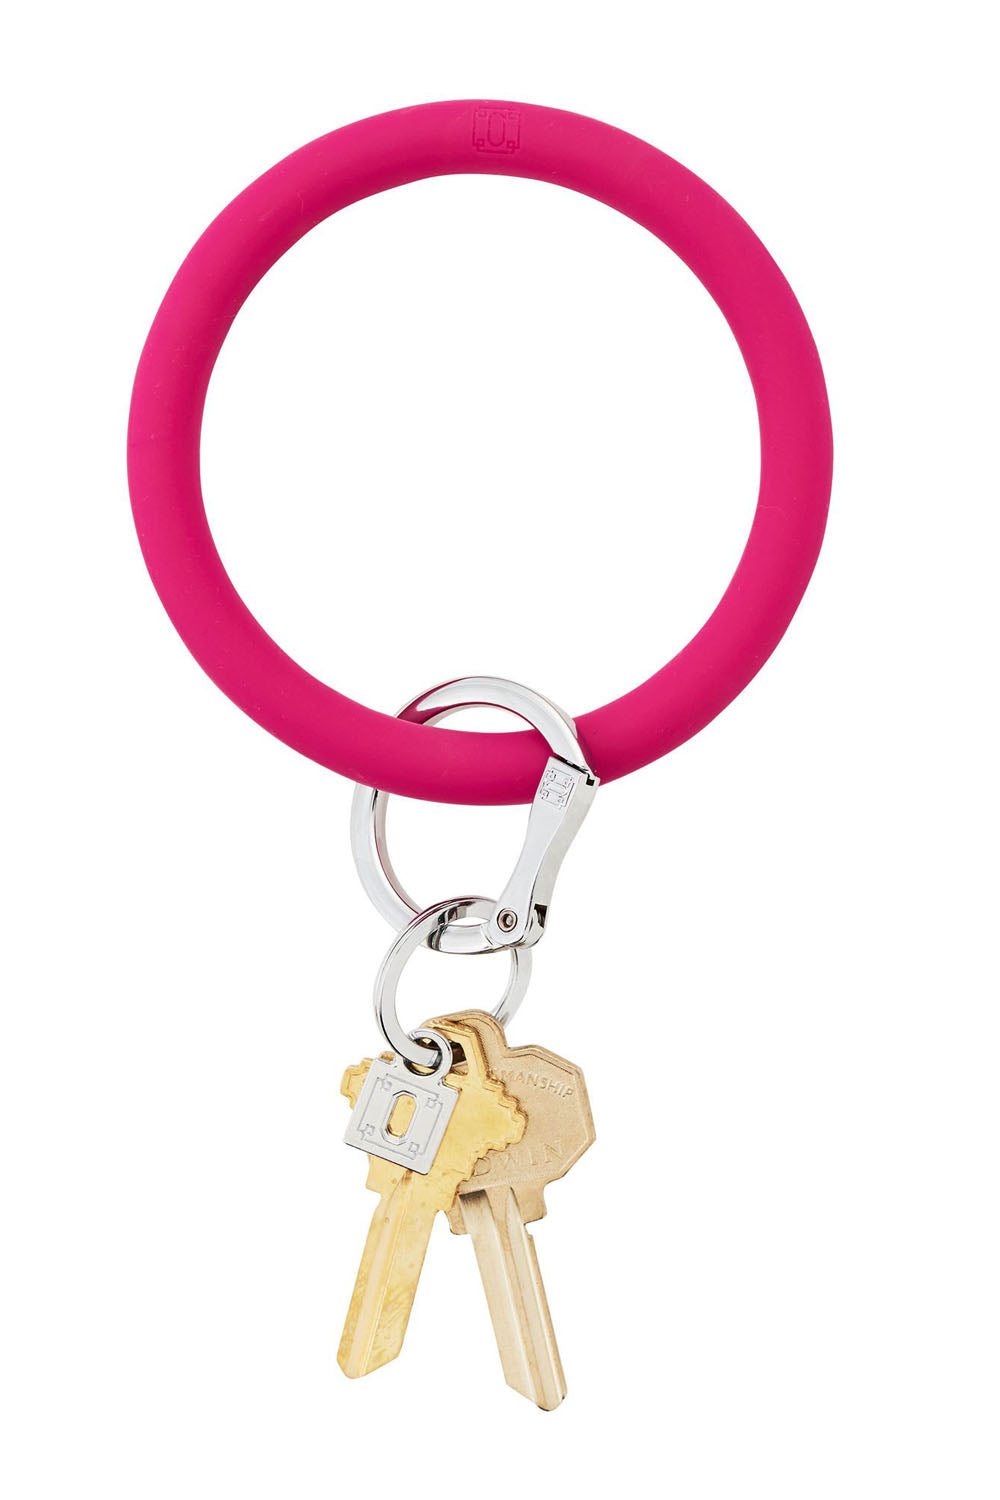 Silicone Big O Key Ring - Solid I Scream Pink